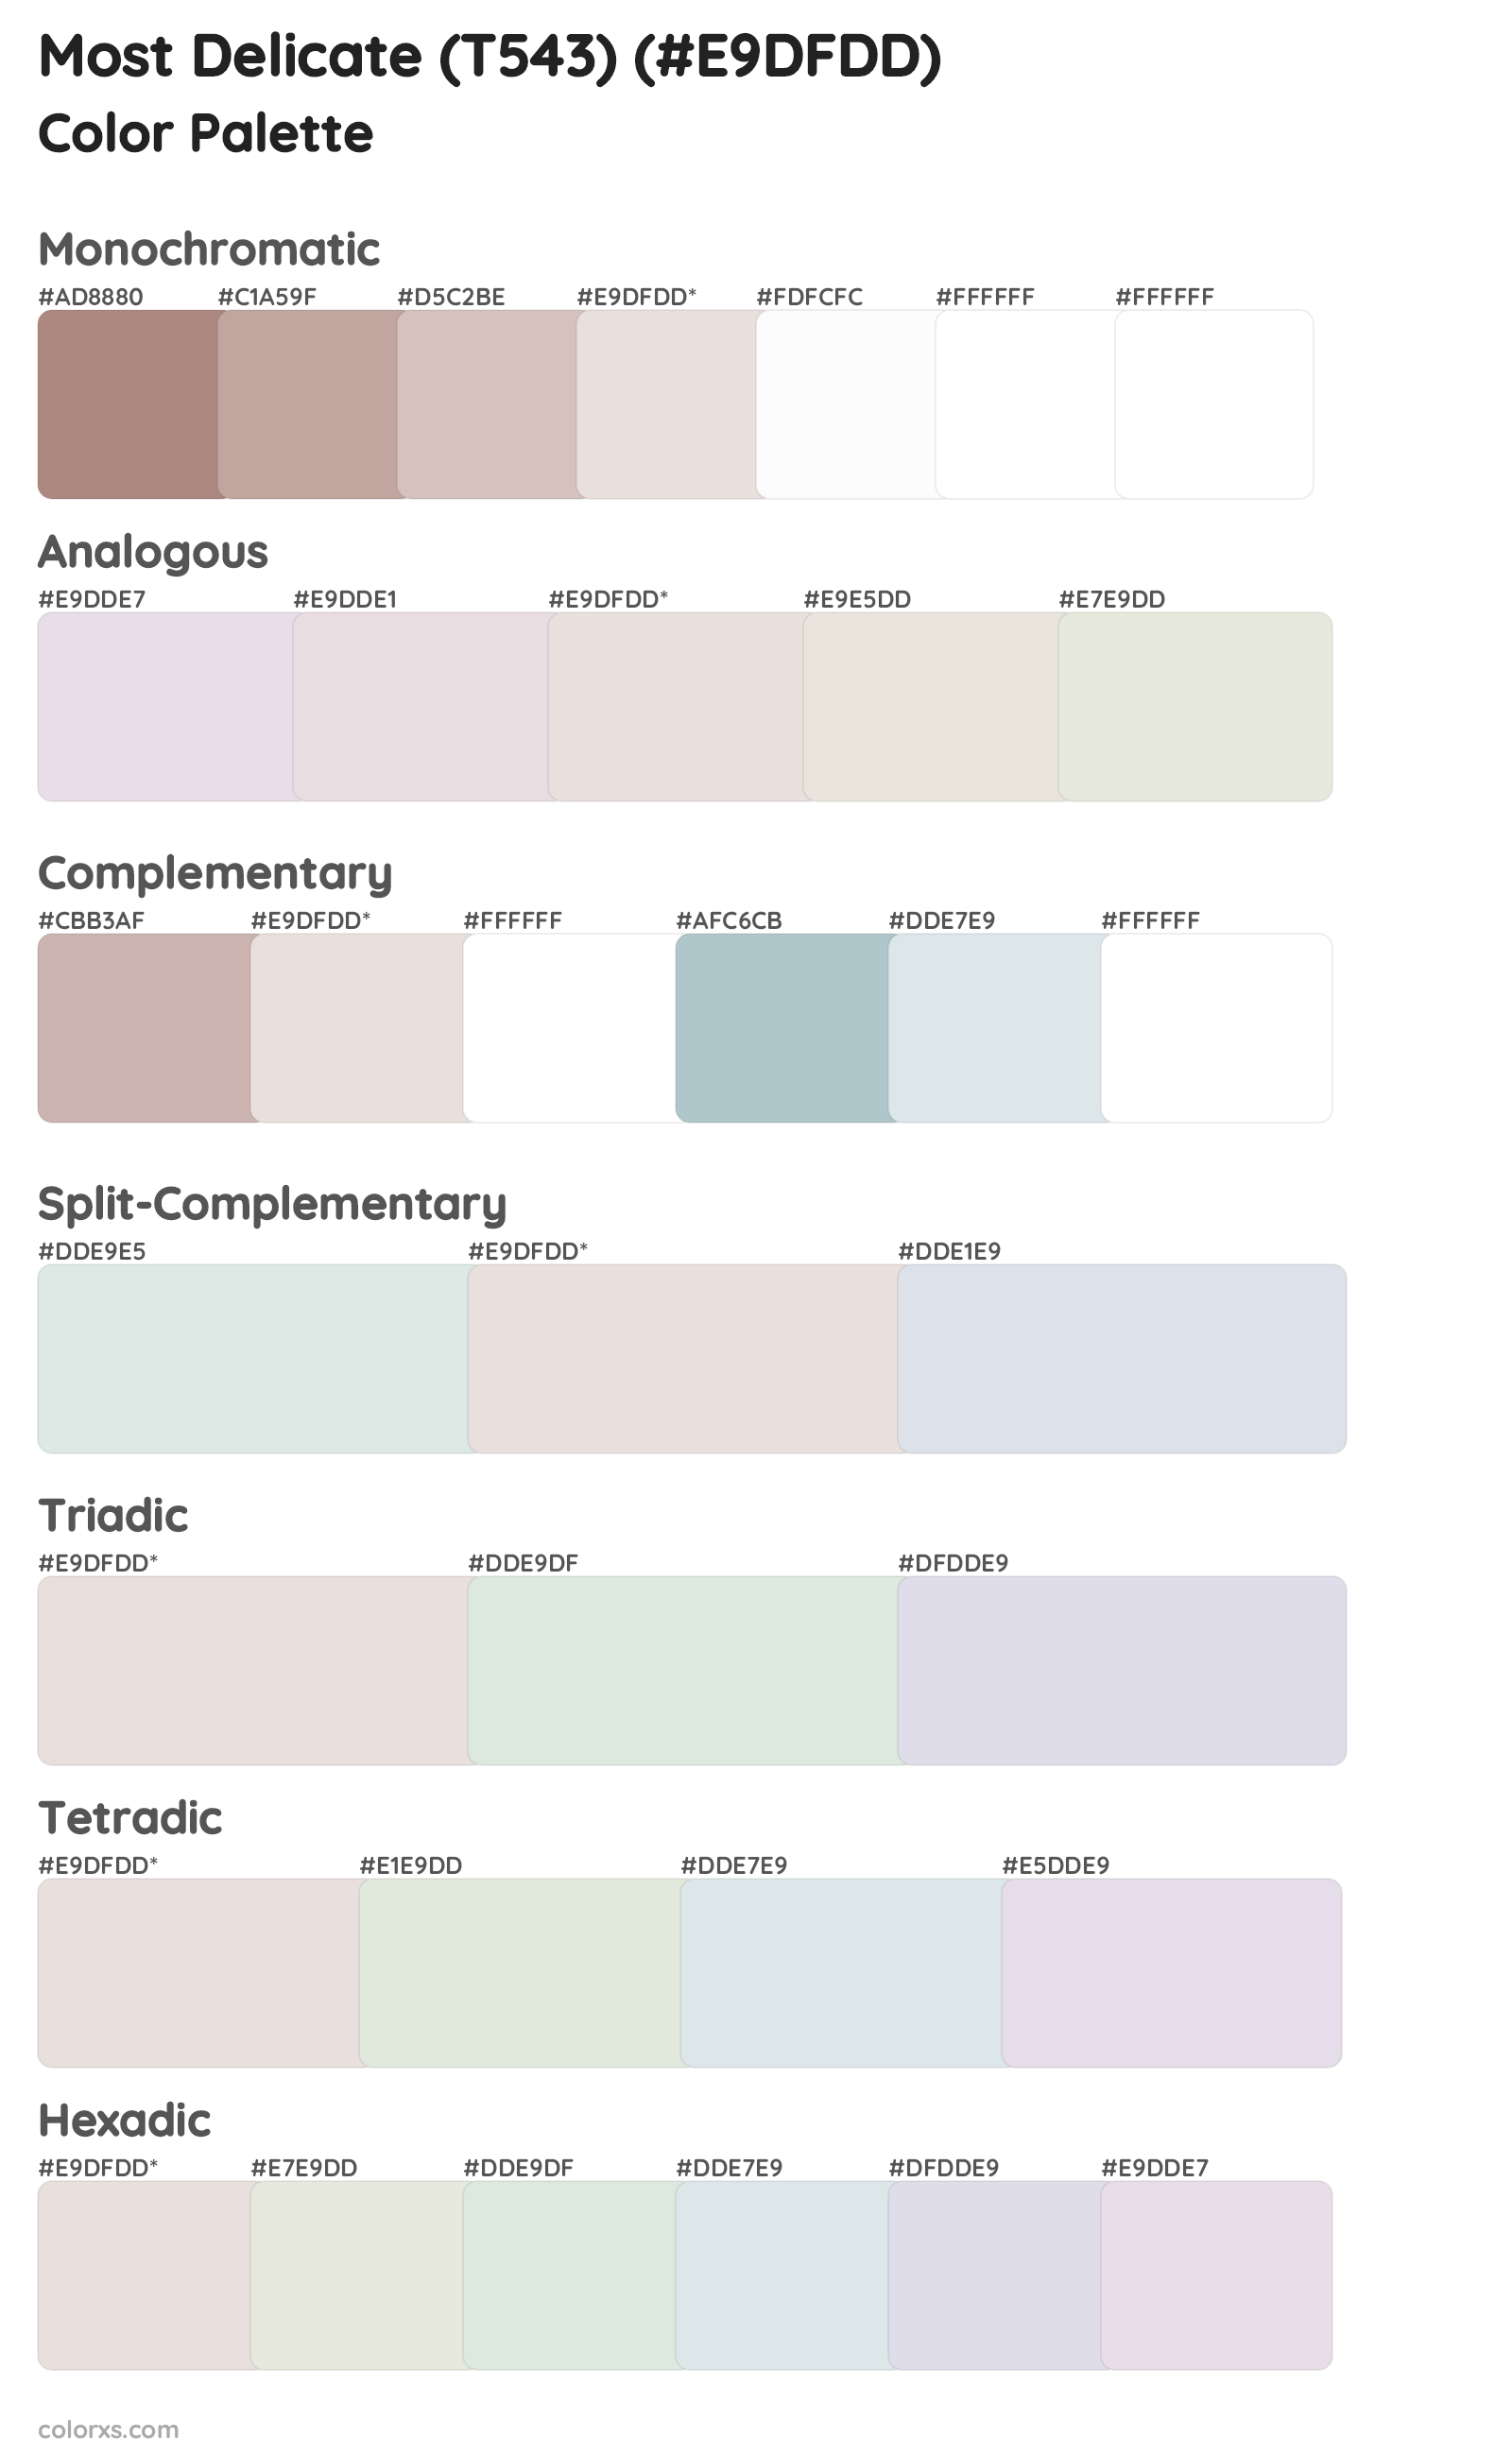 Most Delicate (T543) Color Scheme Palettes